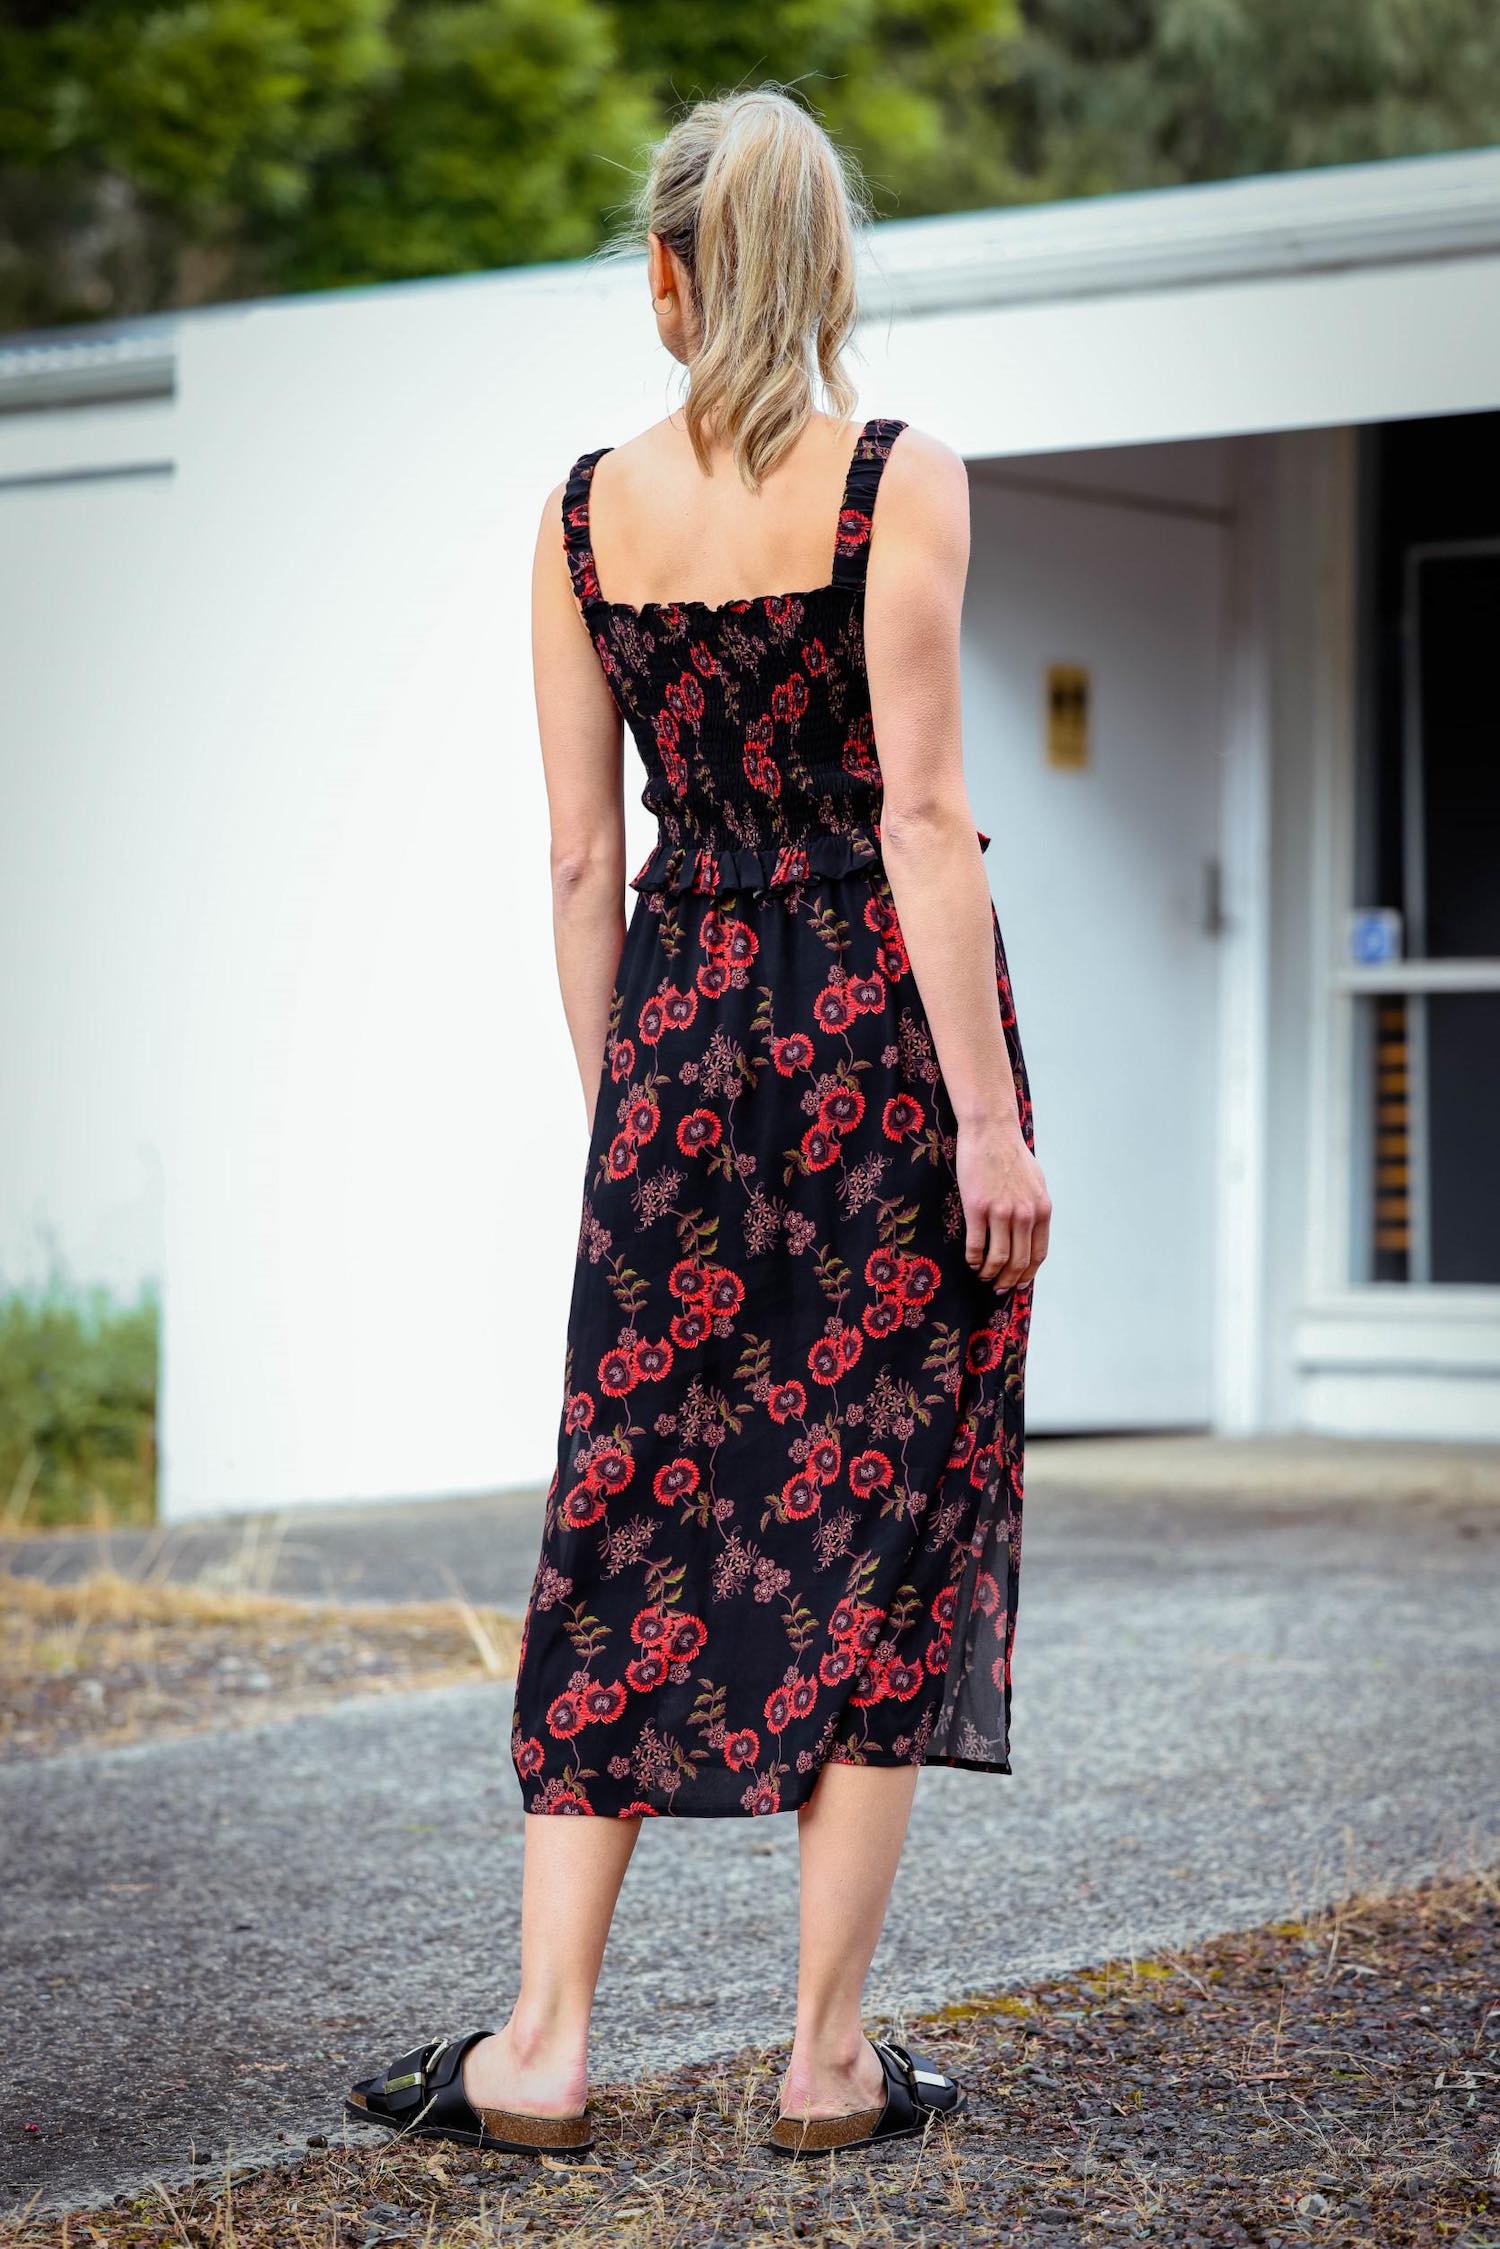 sleeveless summer dresses australia